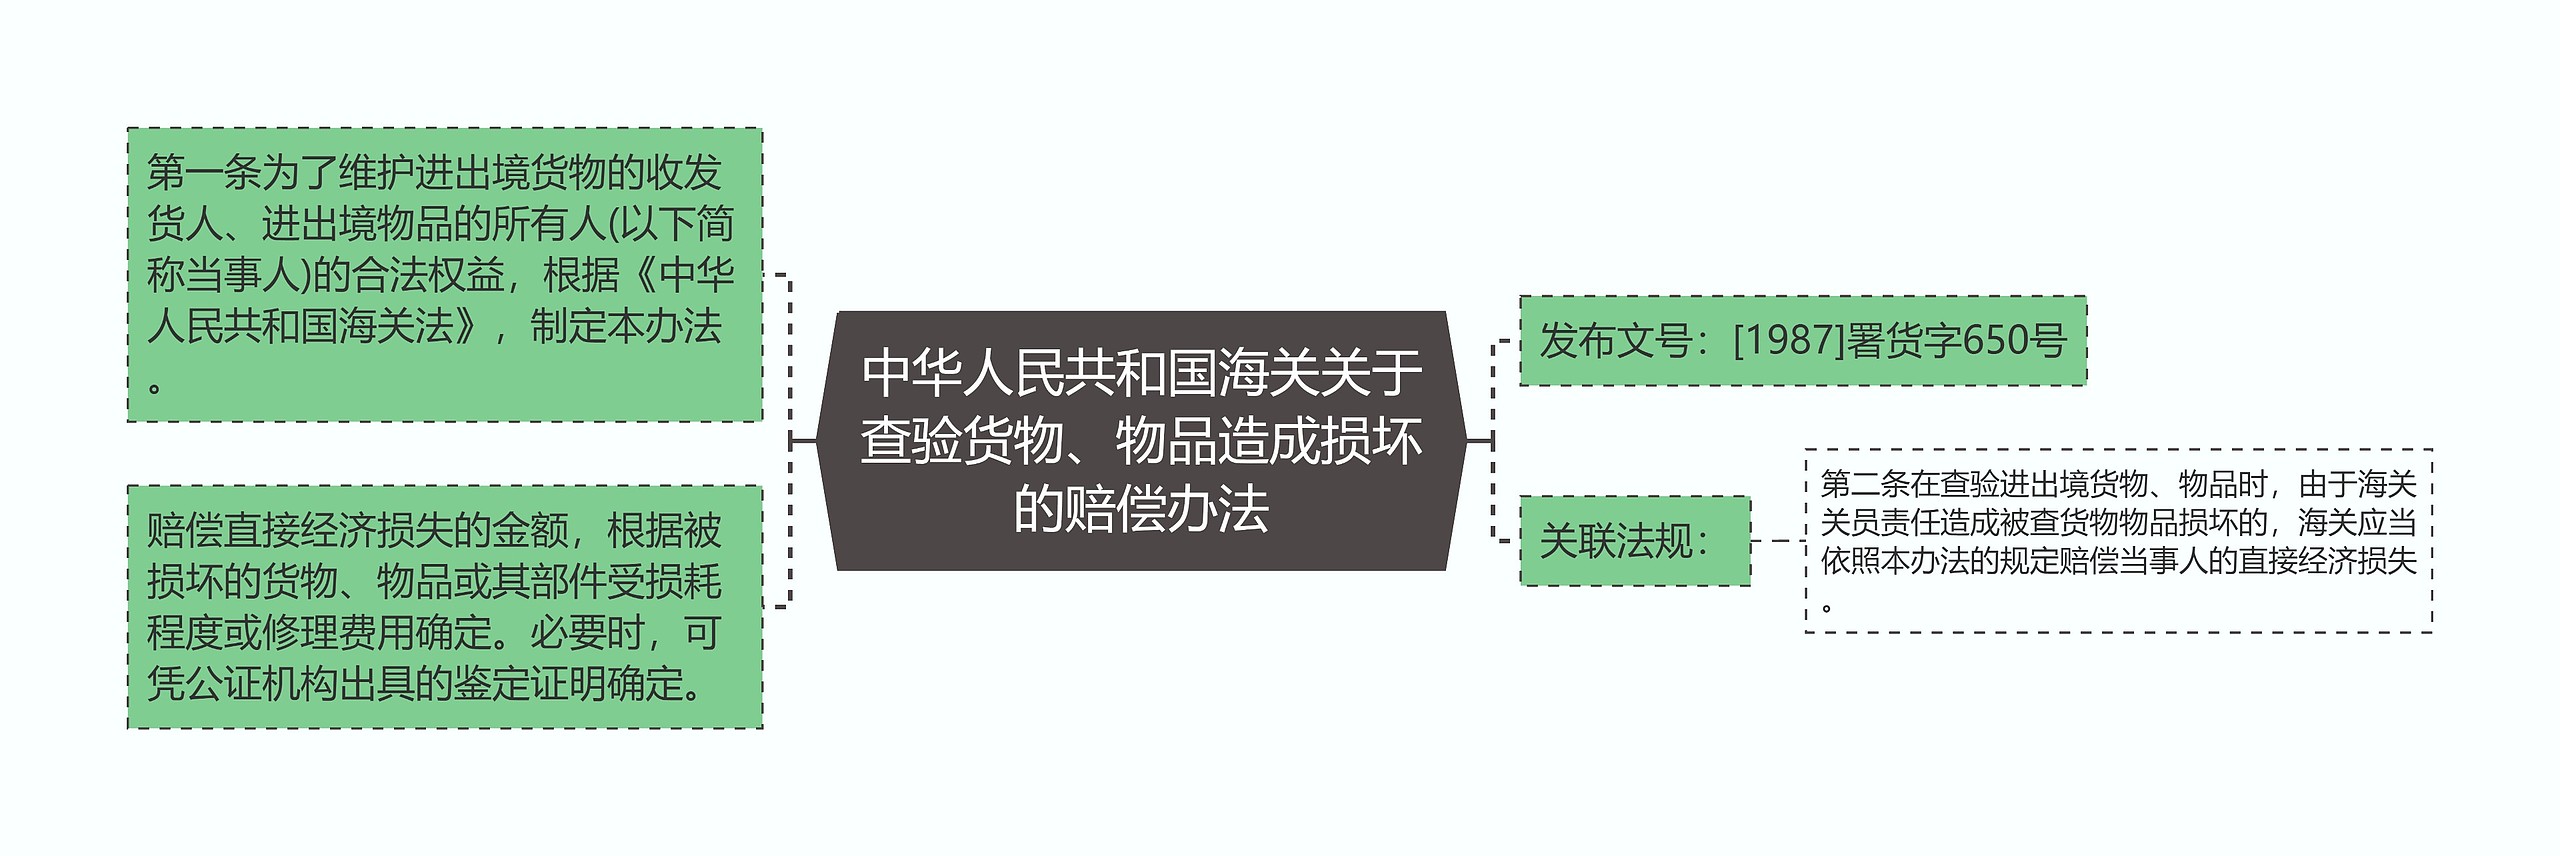 中华人民共和国海关关于查验货物、物品造成损坏的赔偿办法